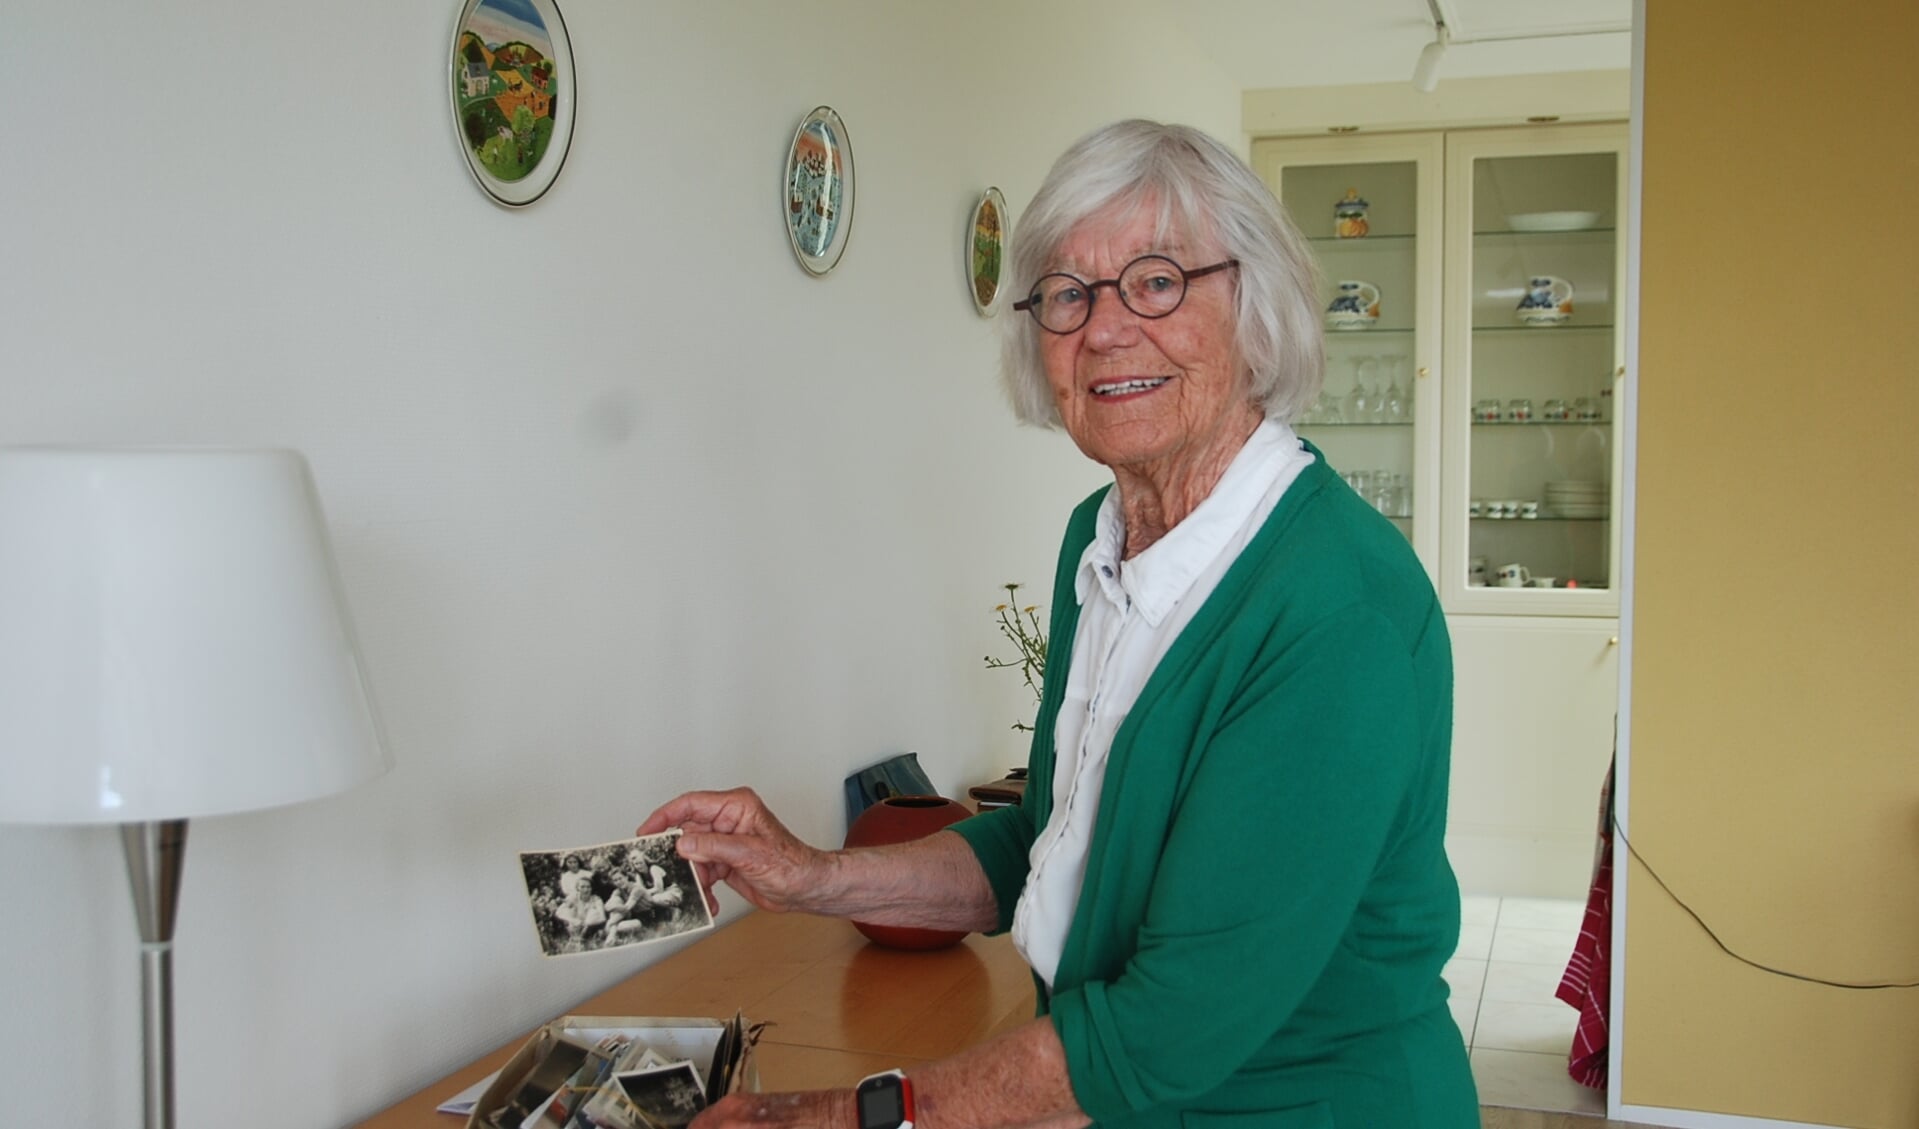 Ineke zoekt in een doos met oude foto's naar foto's van hen samen. Met Henny kijkt ze ook regelmatig naar foto's van vroeger.